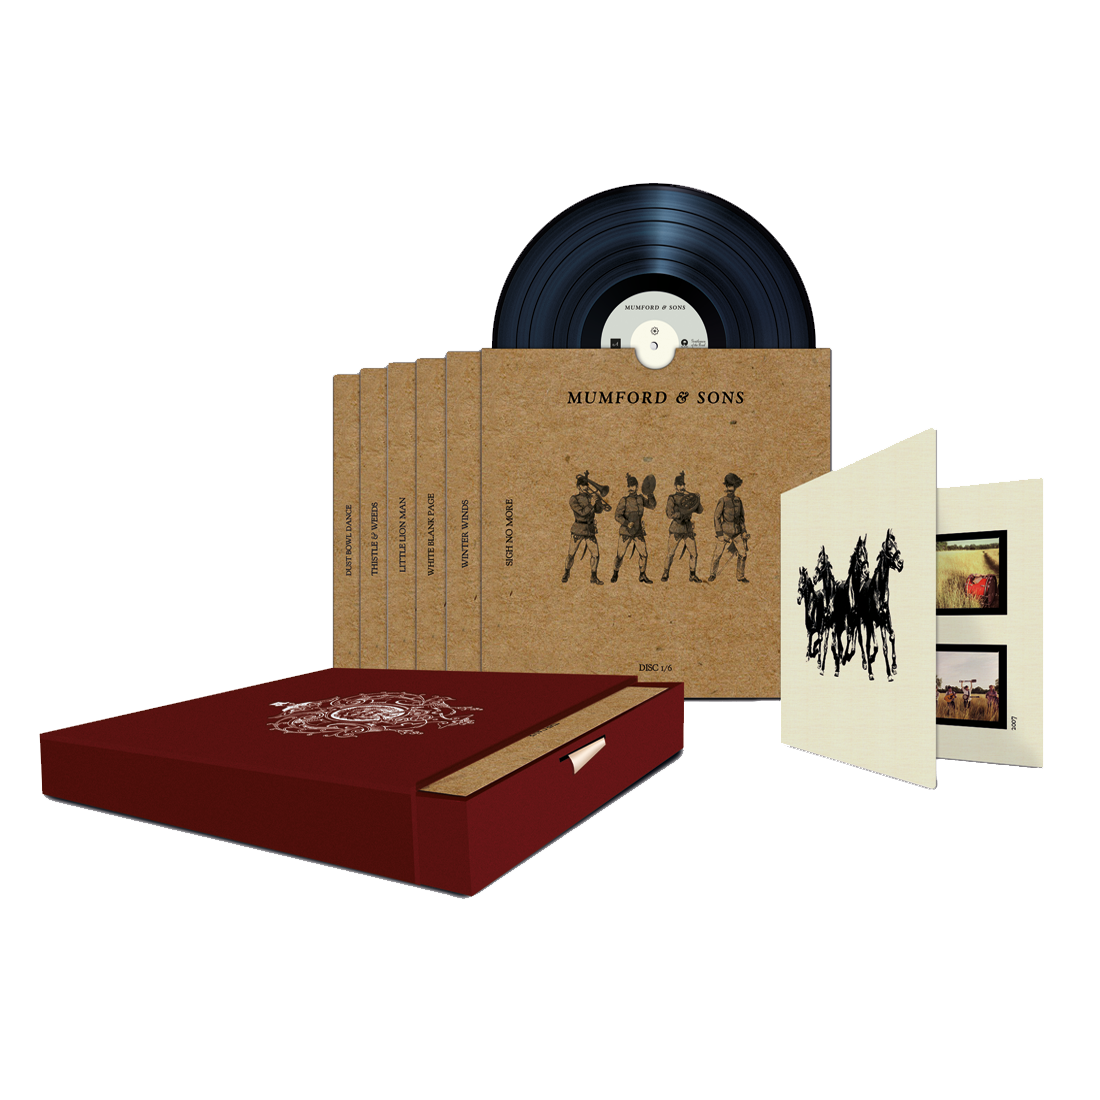 Mumford & Sons: Sigh No More 10th Anniversary Vinyl Box Set